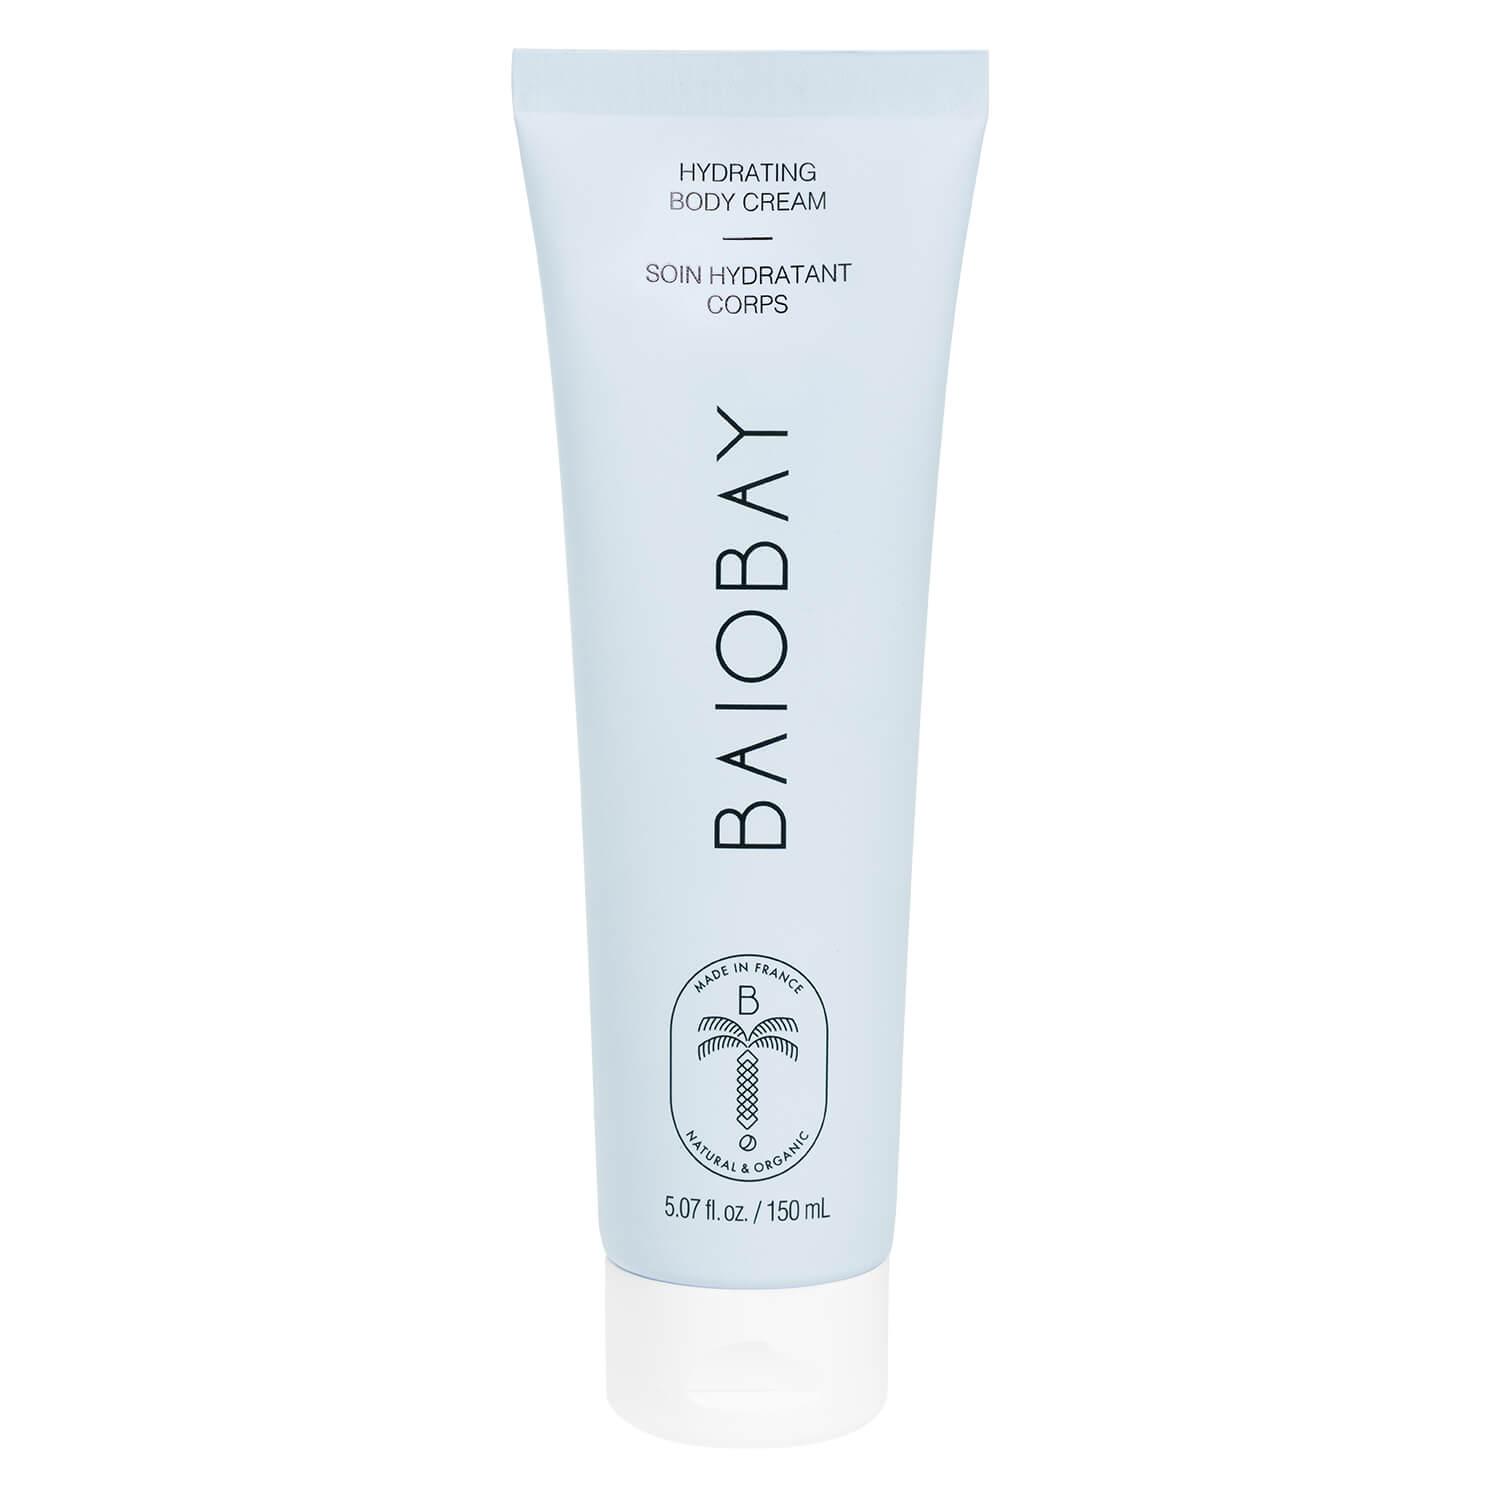 BAIOBAY - Hydrating Body Cream